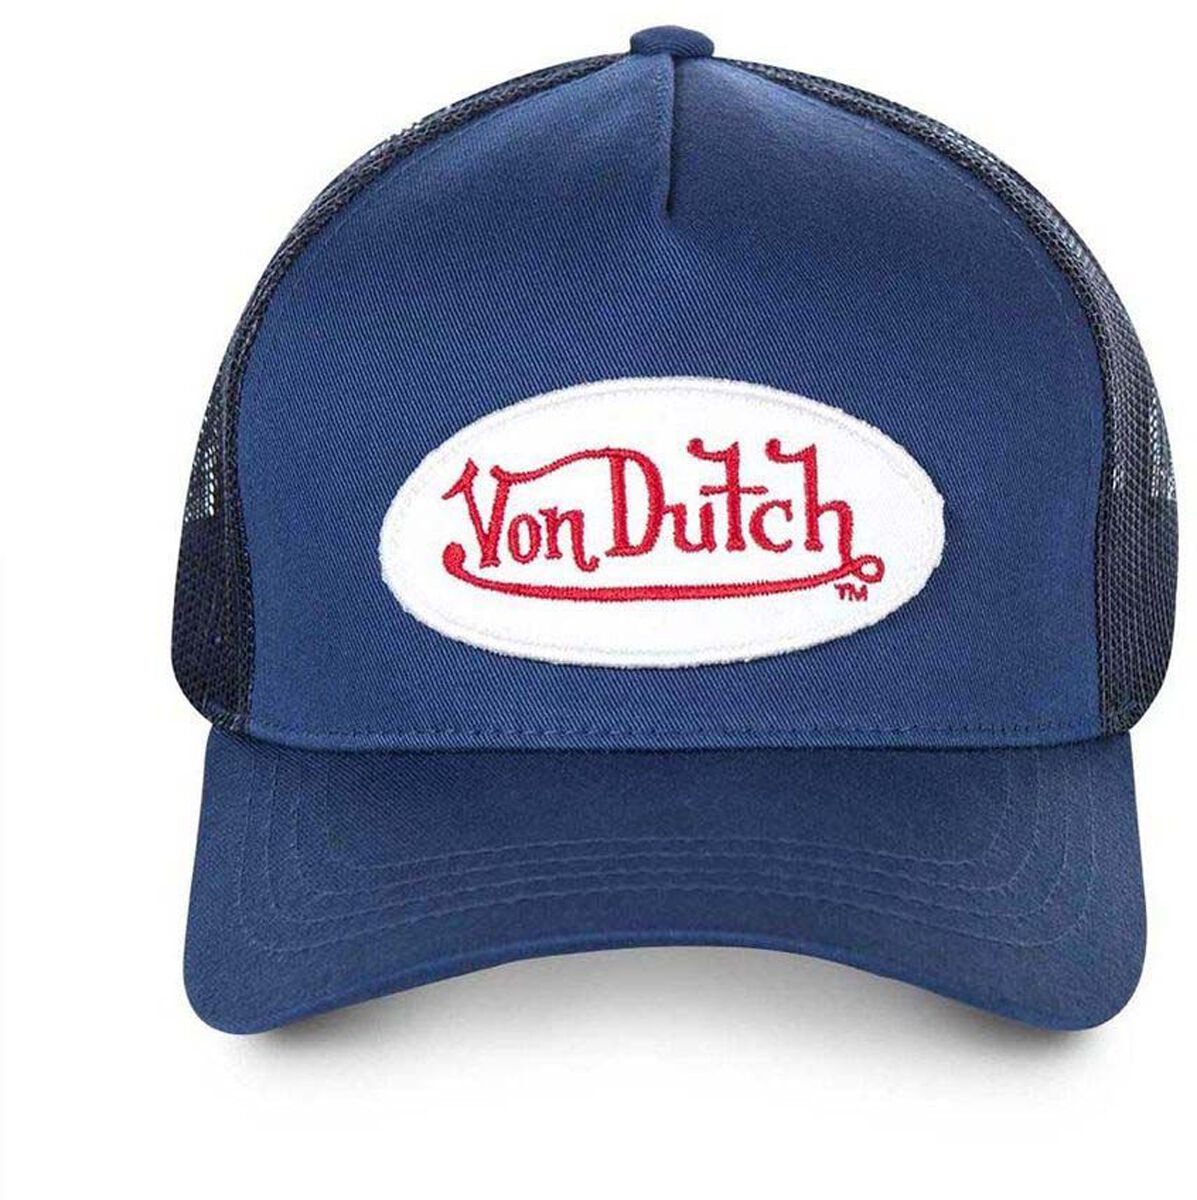 Image of Cappello di Von Dutch - VON DUTCH WOMEN’S BASEBALL CAP WITH MESH - Unisex - blu